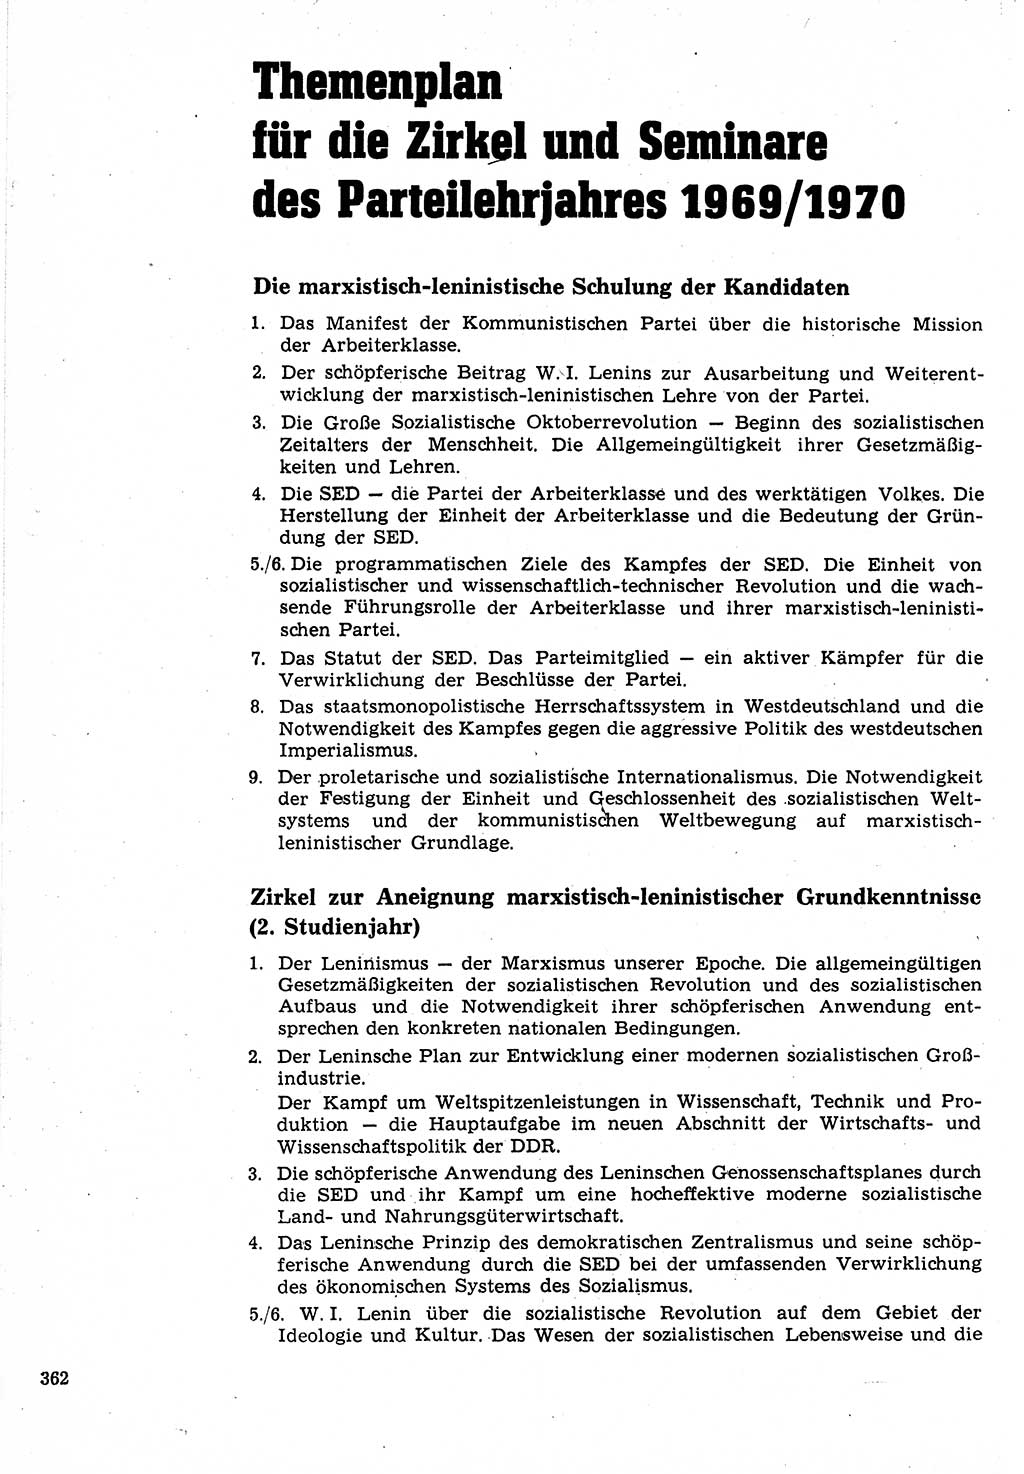 Neuer Weg (NW), Organ des Zentralkomitees (ZK) der SED (Sozialistische Einheitspartei Deutschlands) für Fragen des Parteilebens, 24. Jahrgang [Deutsche Demokratische Republik (DDR)] 1969, Seite 362 (NW ZK SED DDR 1969, S. 362)